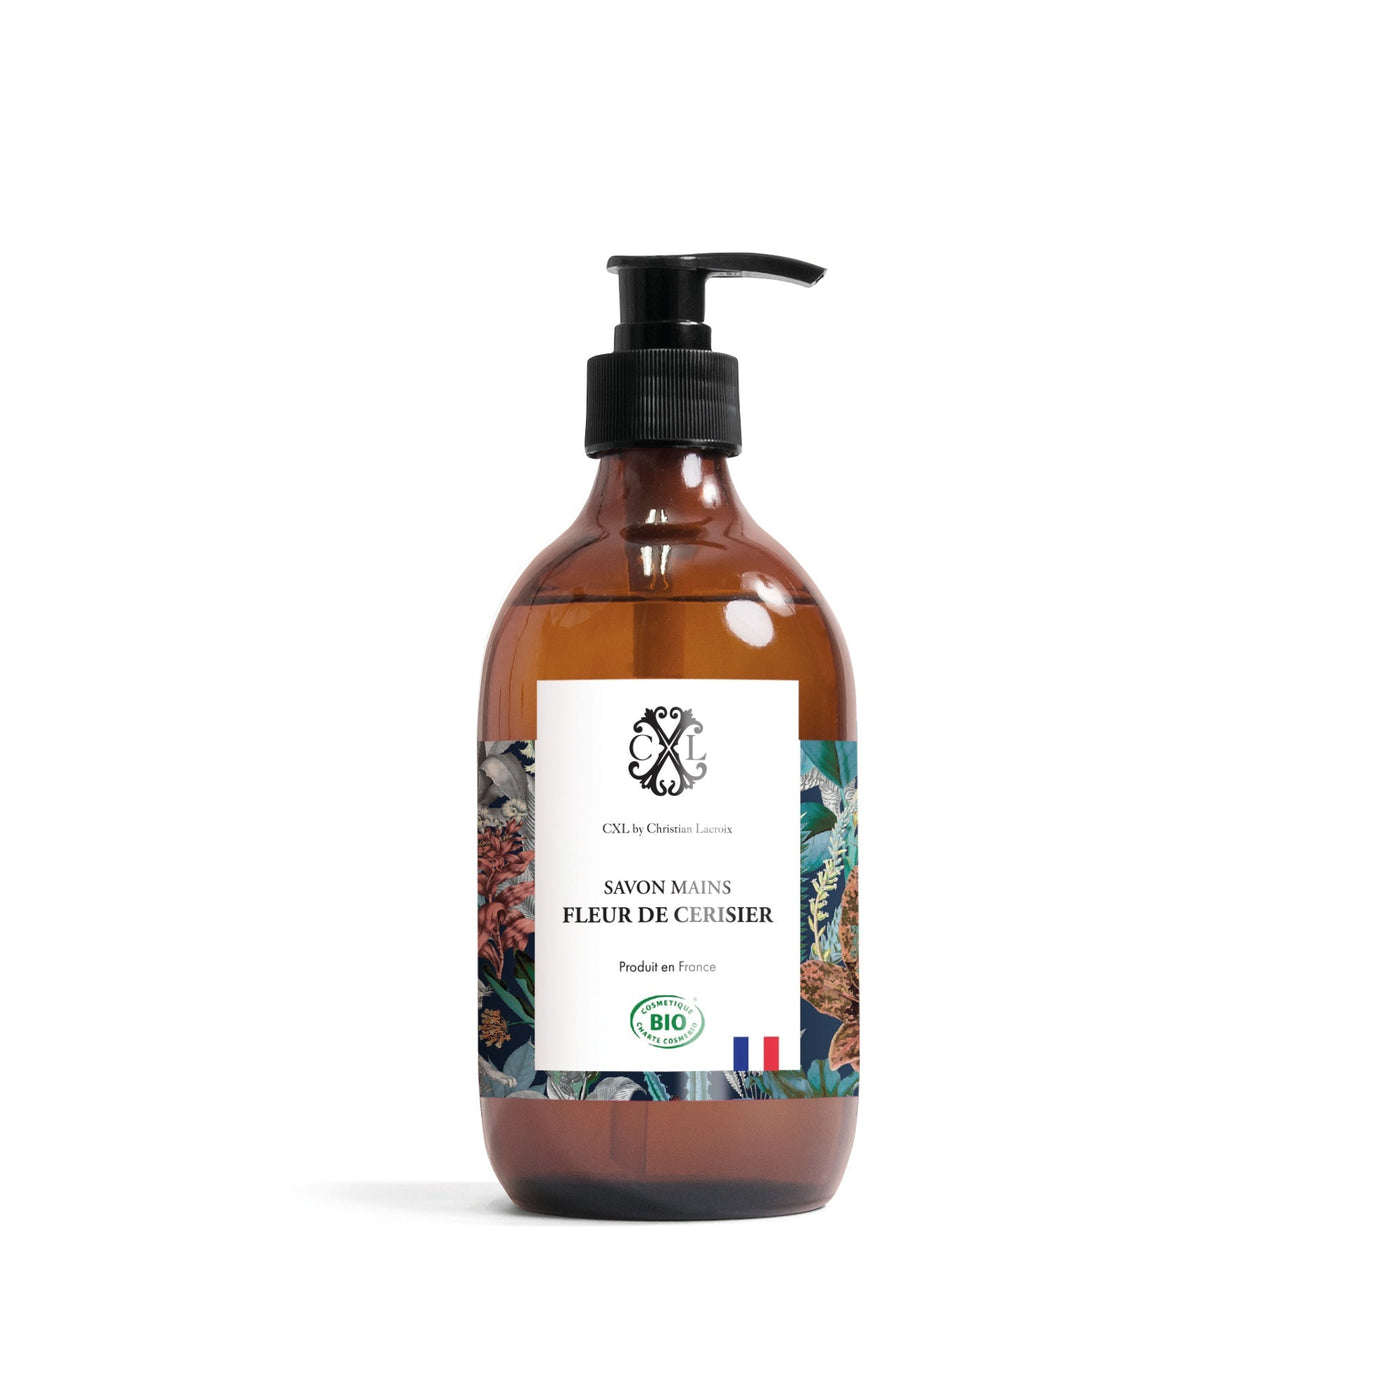 Savon mains Bio parfumÃ©s - Fleur de Cerisier - VipShopBoutic